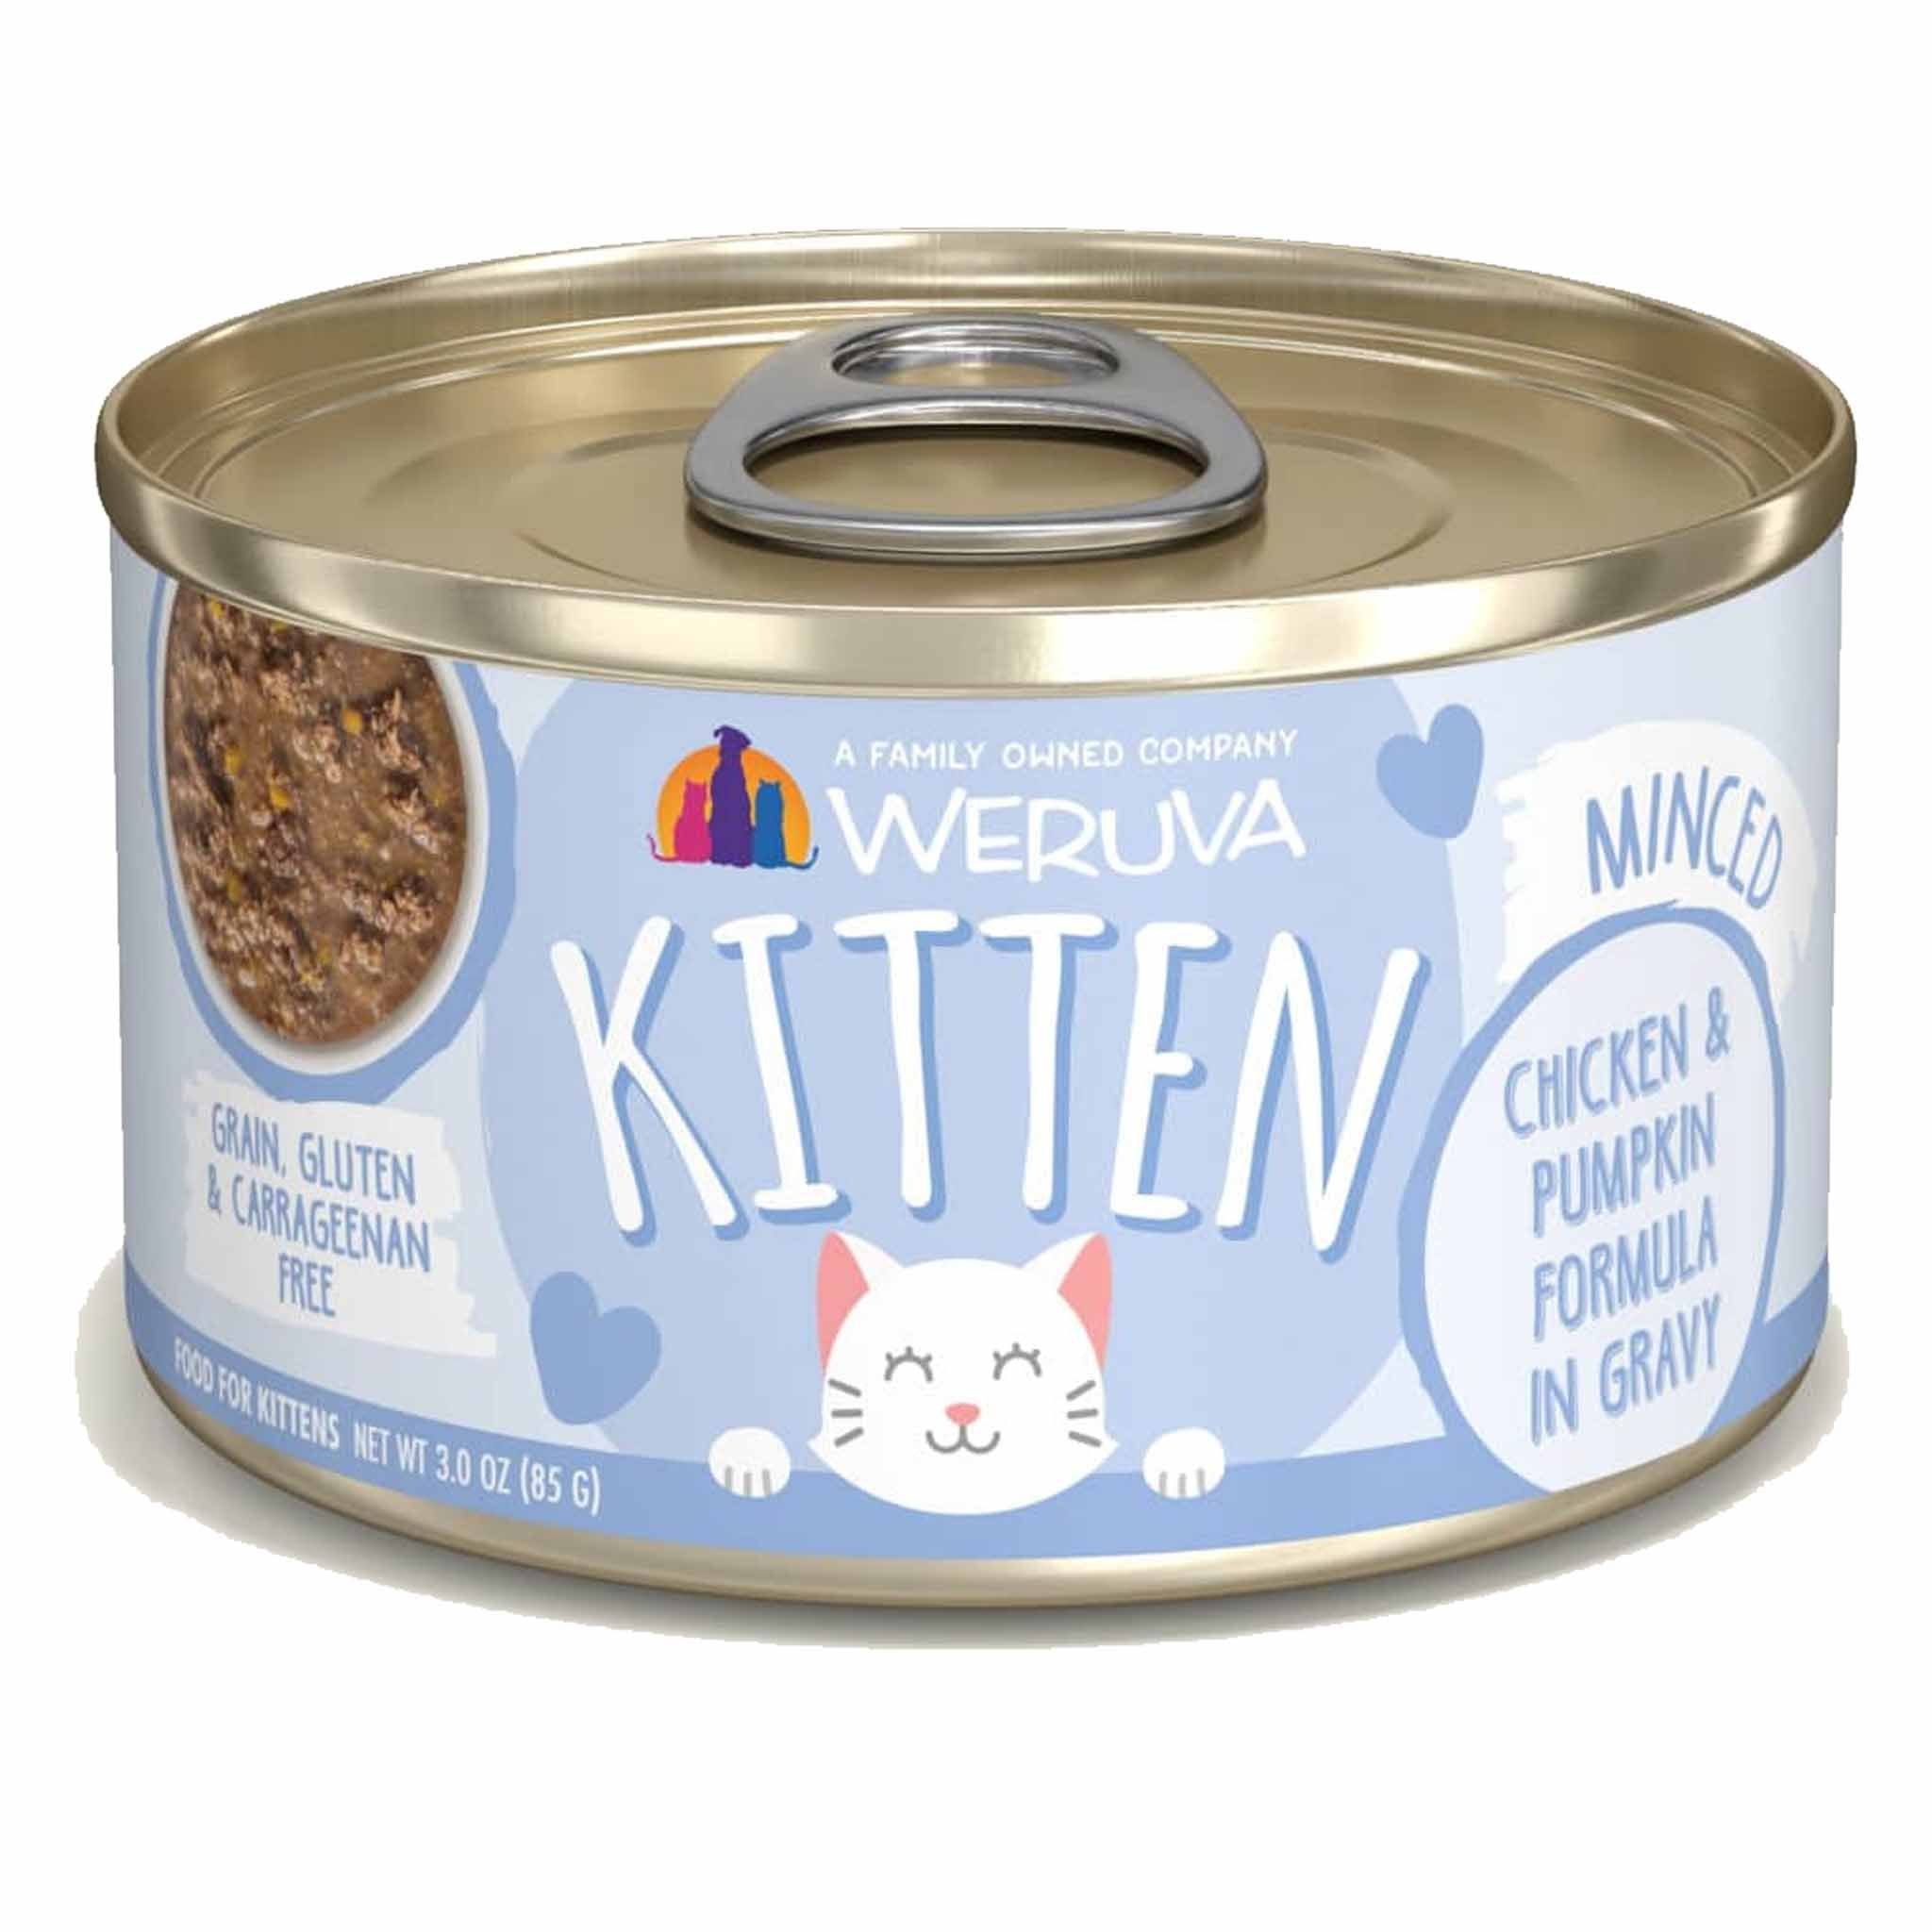 Weruva Kitten Canned Cat Food 3oz, Chicken & Pumpkin Formula in Gravy